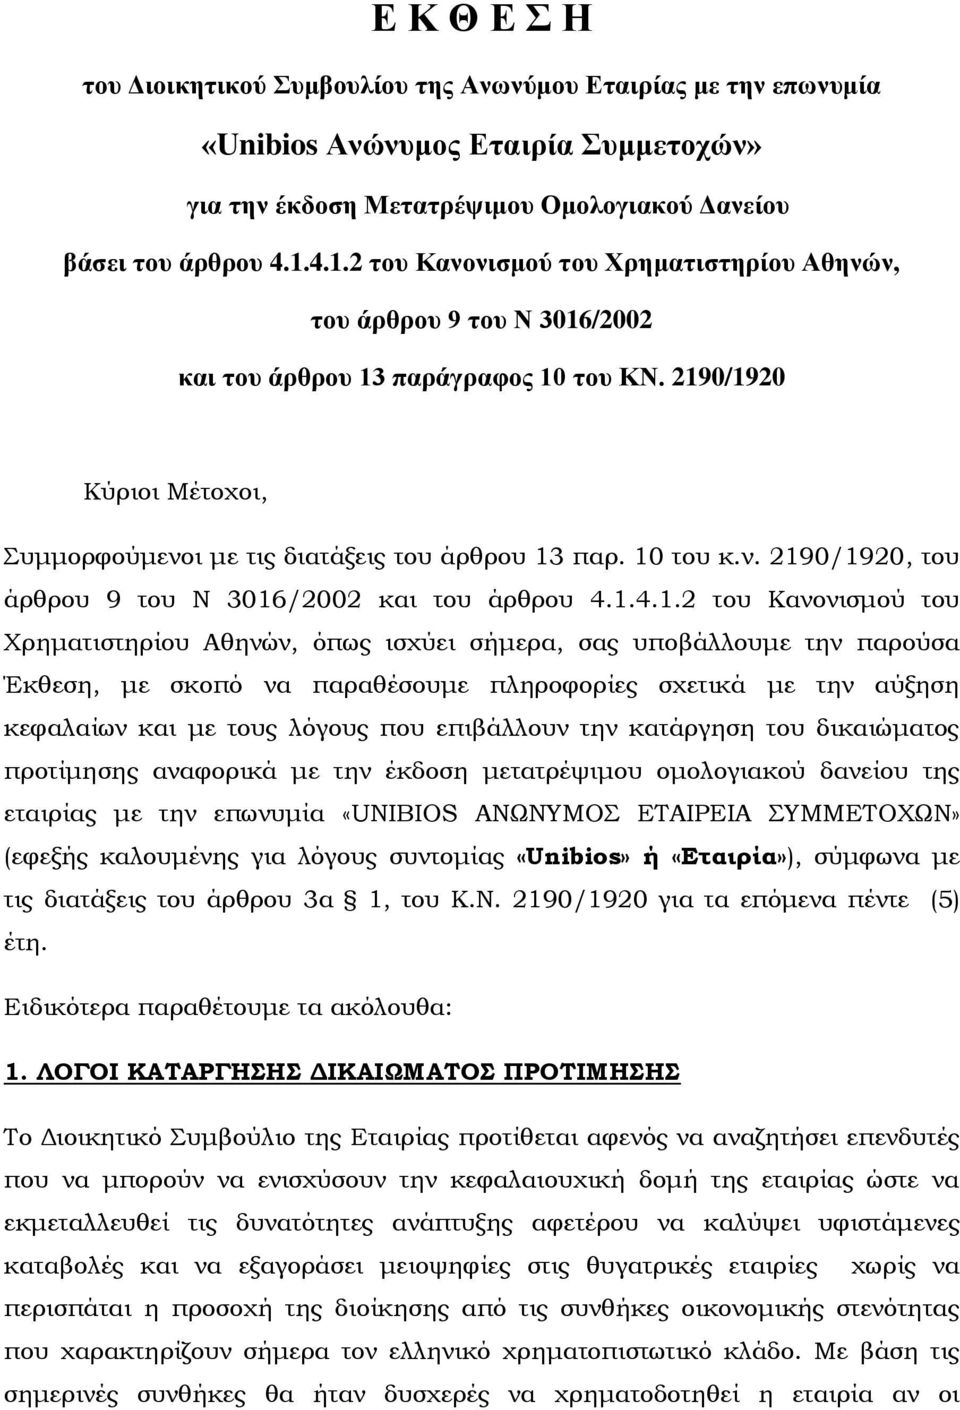 10 του κ.ν. 2190/1920, του άρθρου 9 του Ν 3016/2002 και του άρθρου 4.1.4.1.2 του Κανονισμού του Χρηματιστηρίου Αθηνών, όπως ισχύει σήμερα, σας υποβάλλουμε την παρούσα Έκθεση, με σκοπό να παραθέσουμε